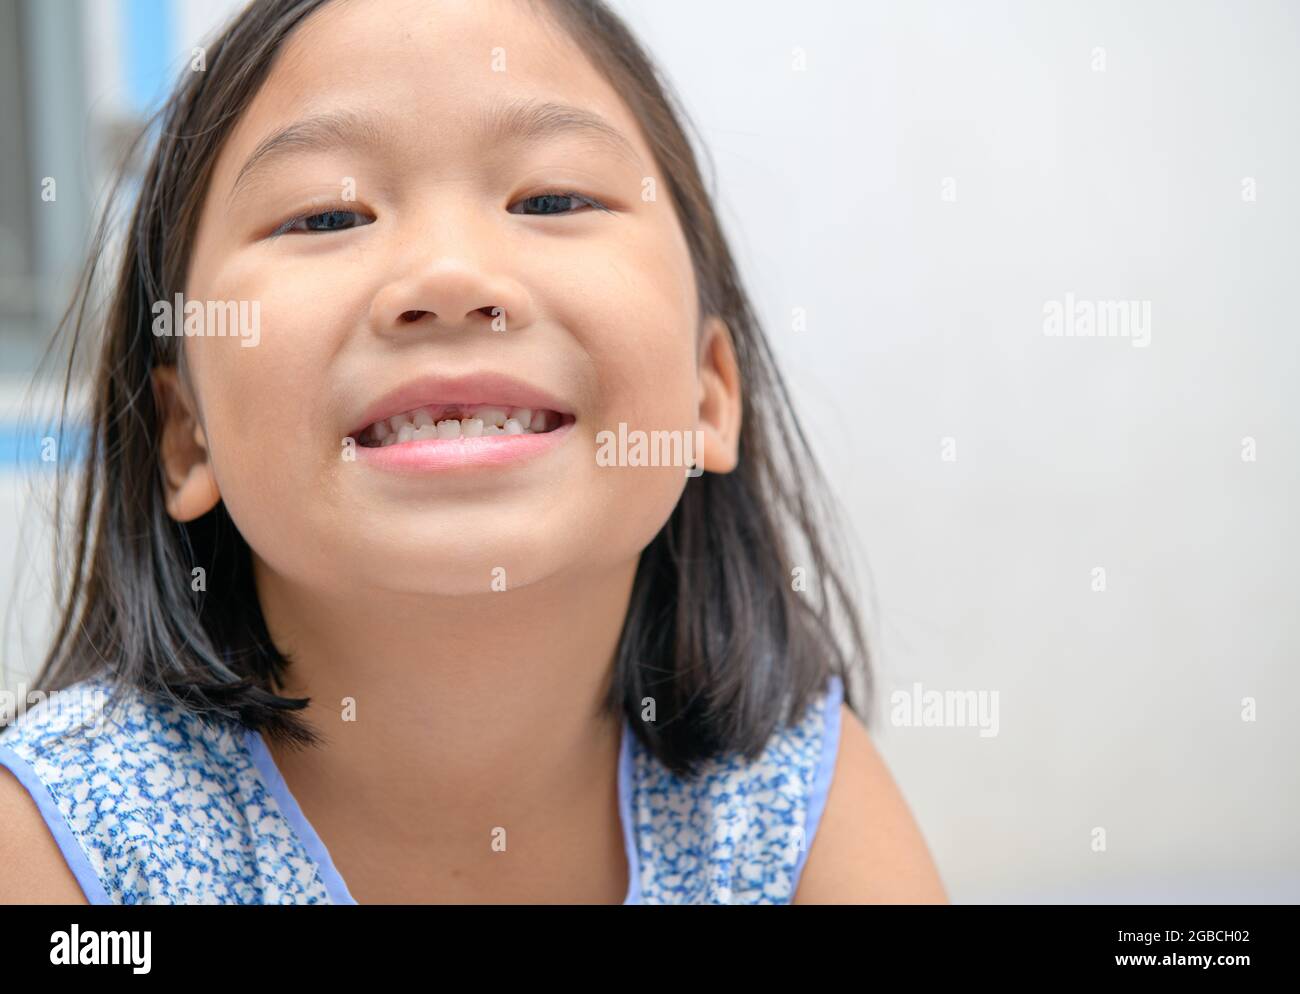 Fille asiatique sourit et montrant ses dents de lait cassées. Jolie fille a perdu ses dents de lait avant. Concept de santé orale . Banque D'Images